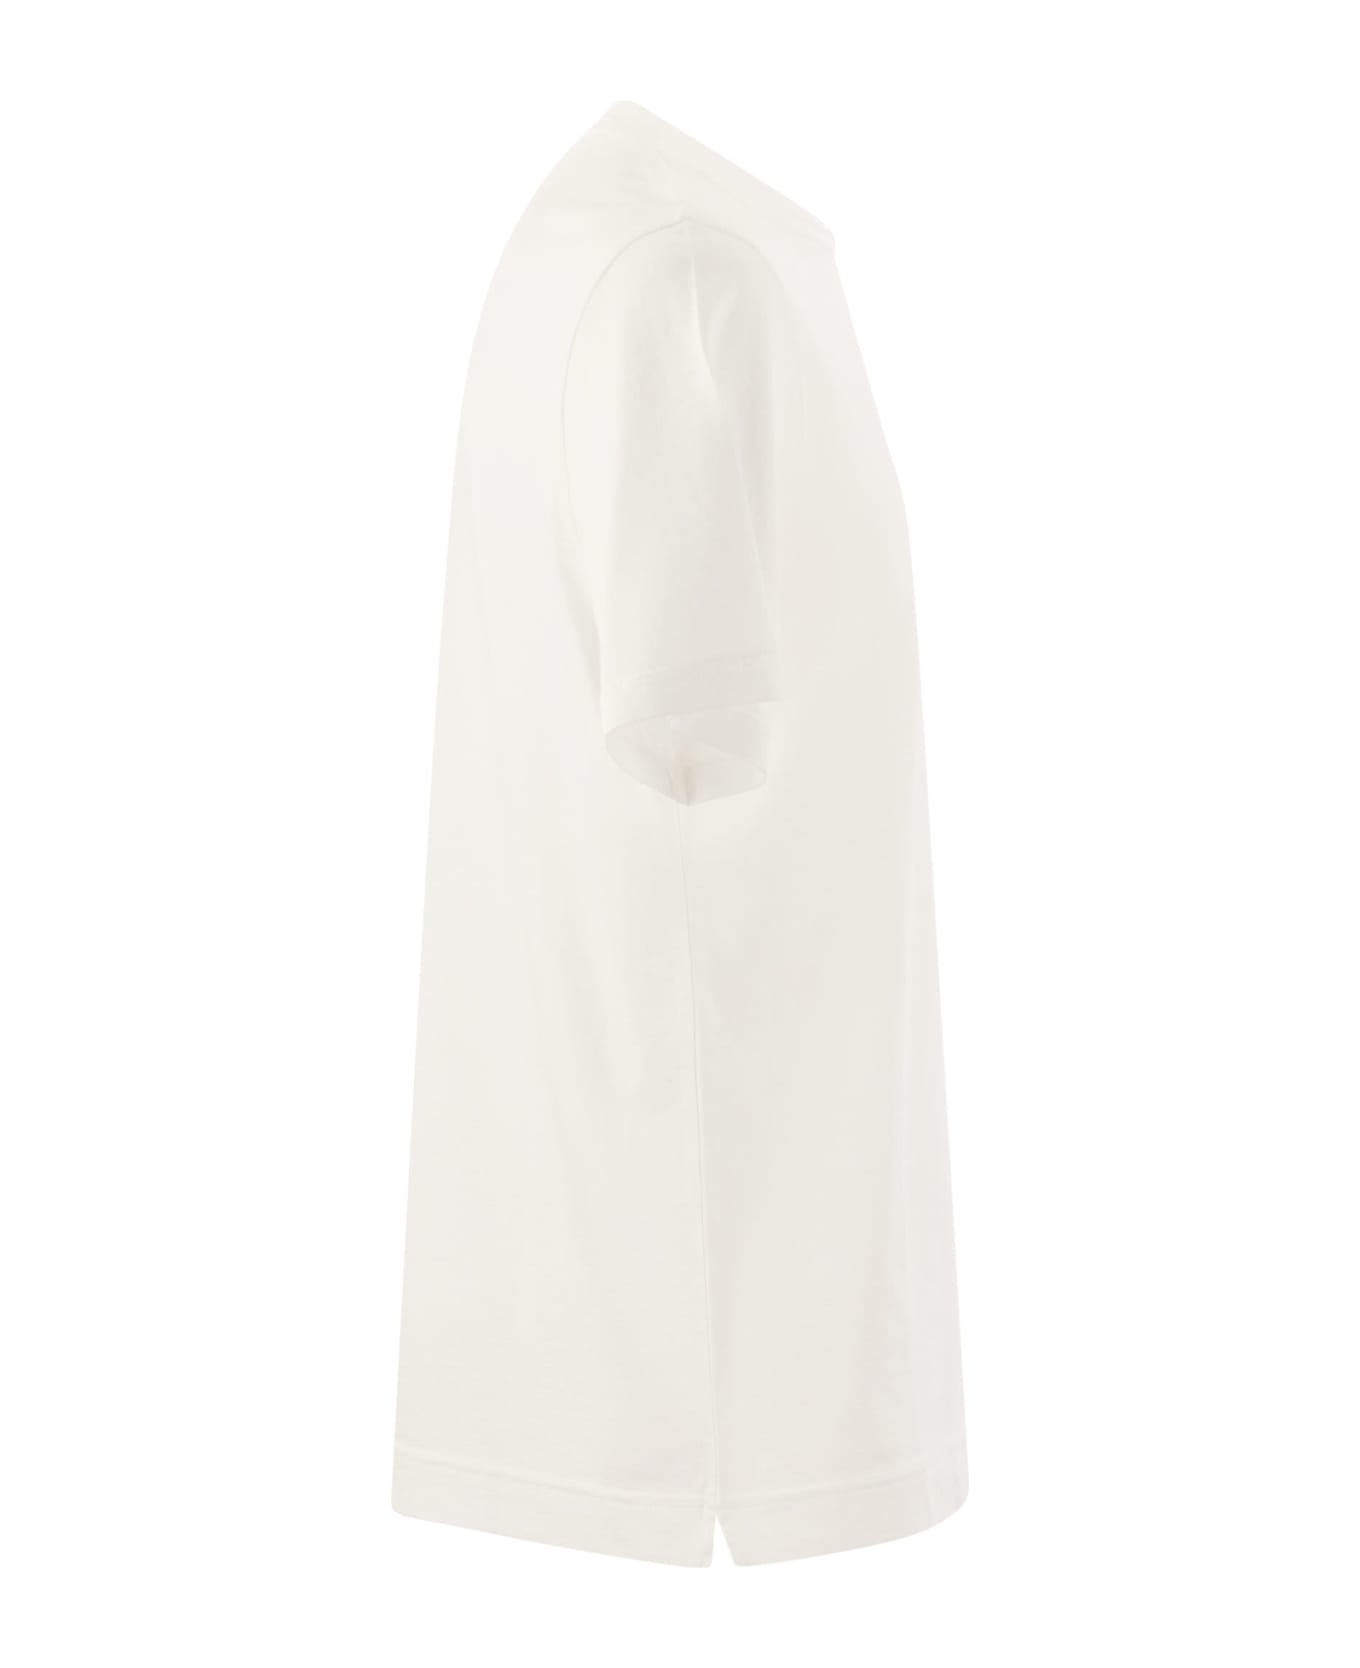 Fedeli Short-sleeved Cotton T-shirt - White シャツ